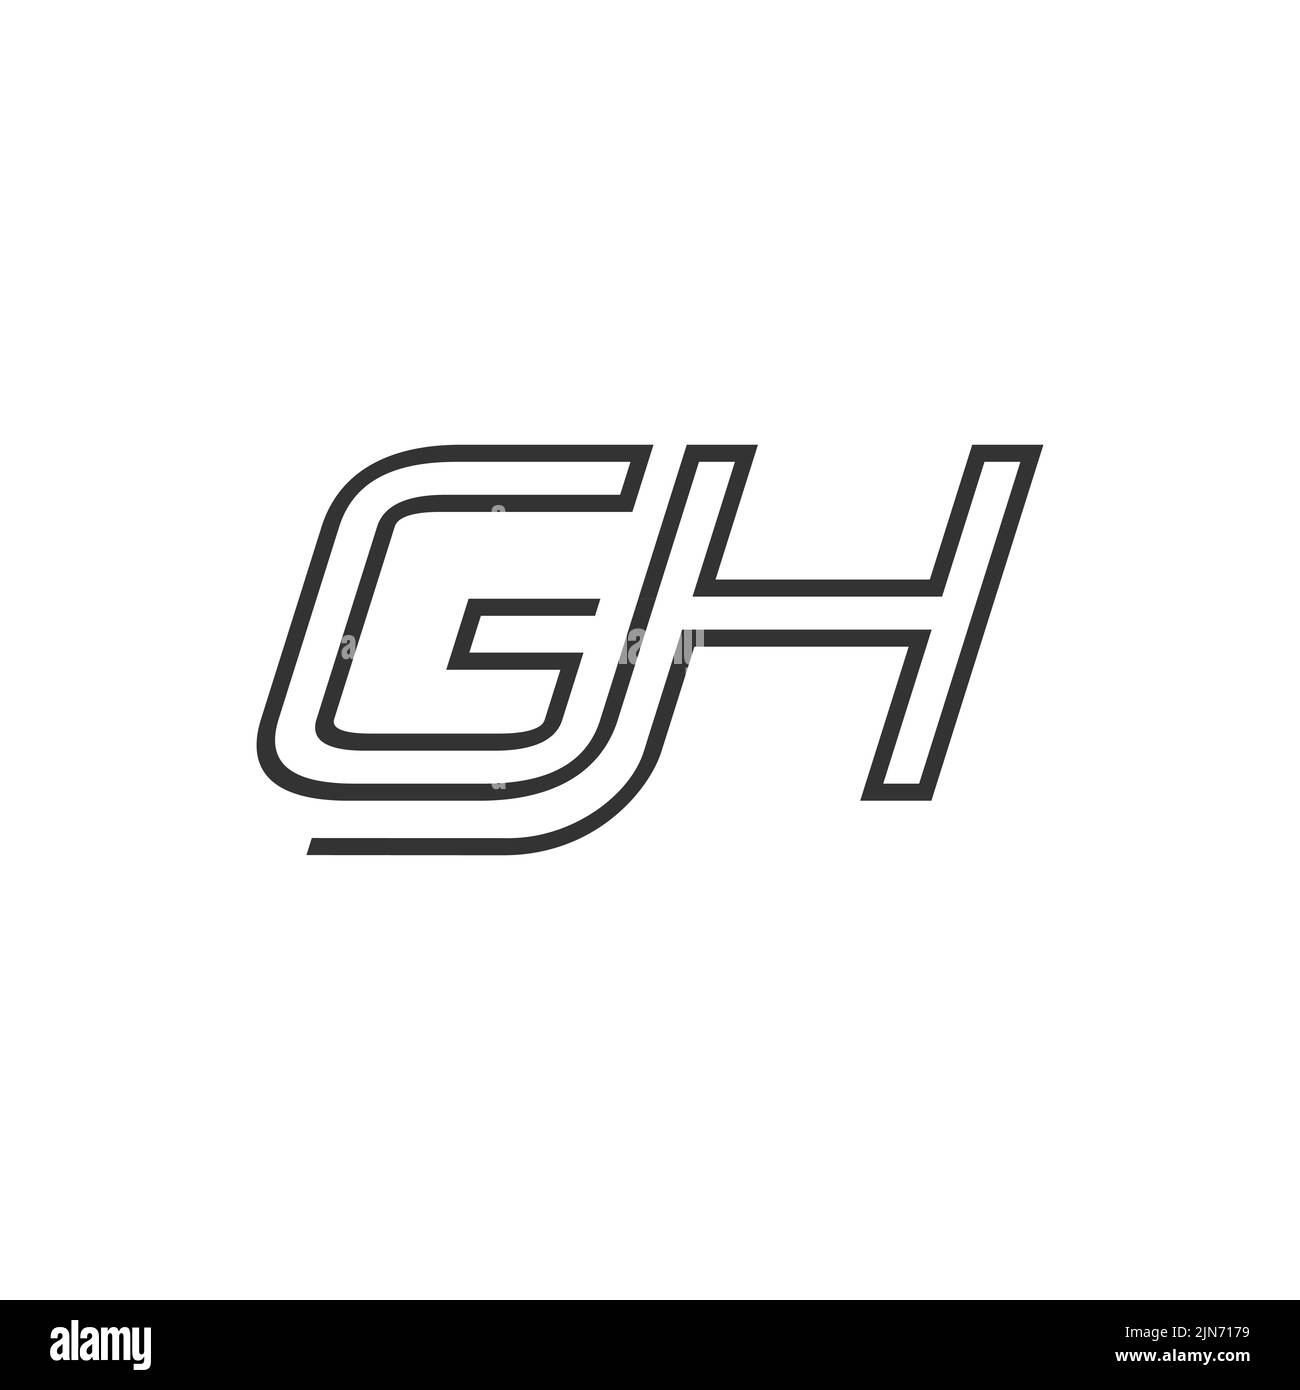 Vettore iniziale di disegno del logo con lettere GH. Logo Creative line art con combinazione di lettere G e H. Illustrazione Vettoriale